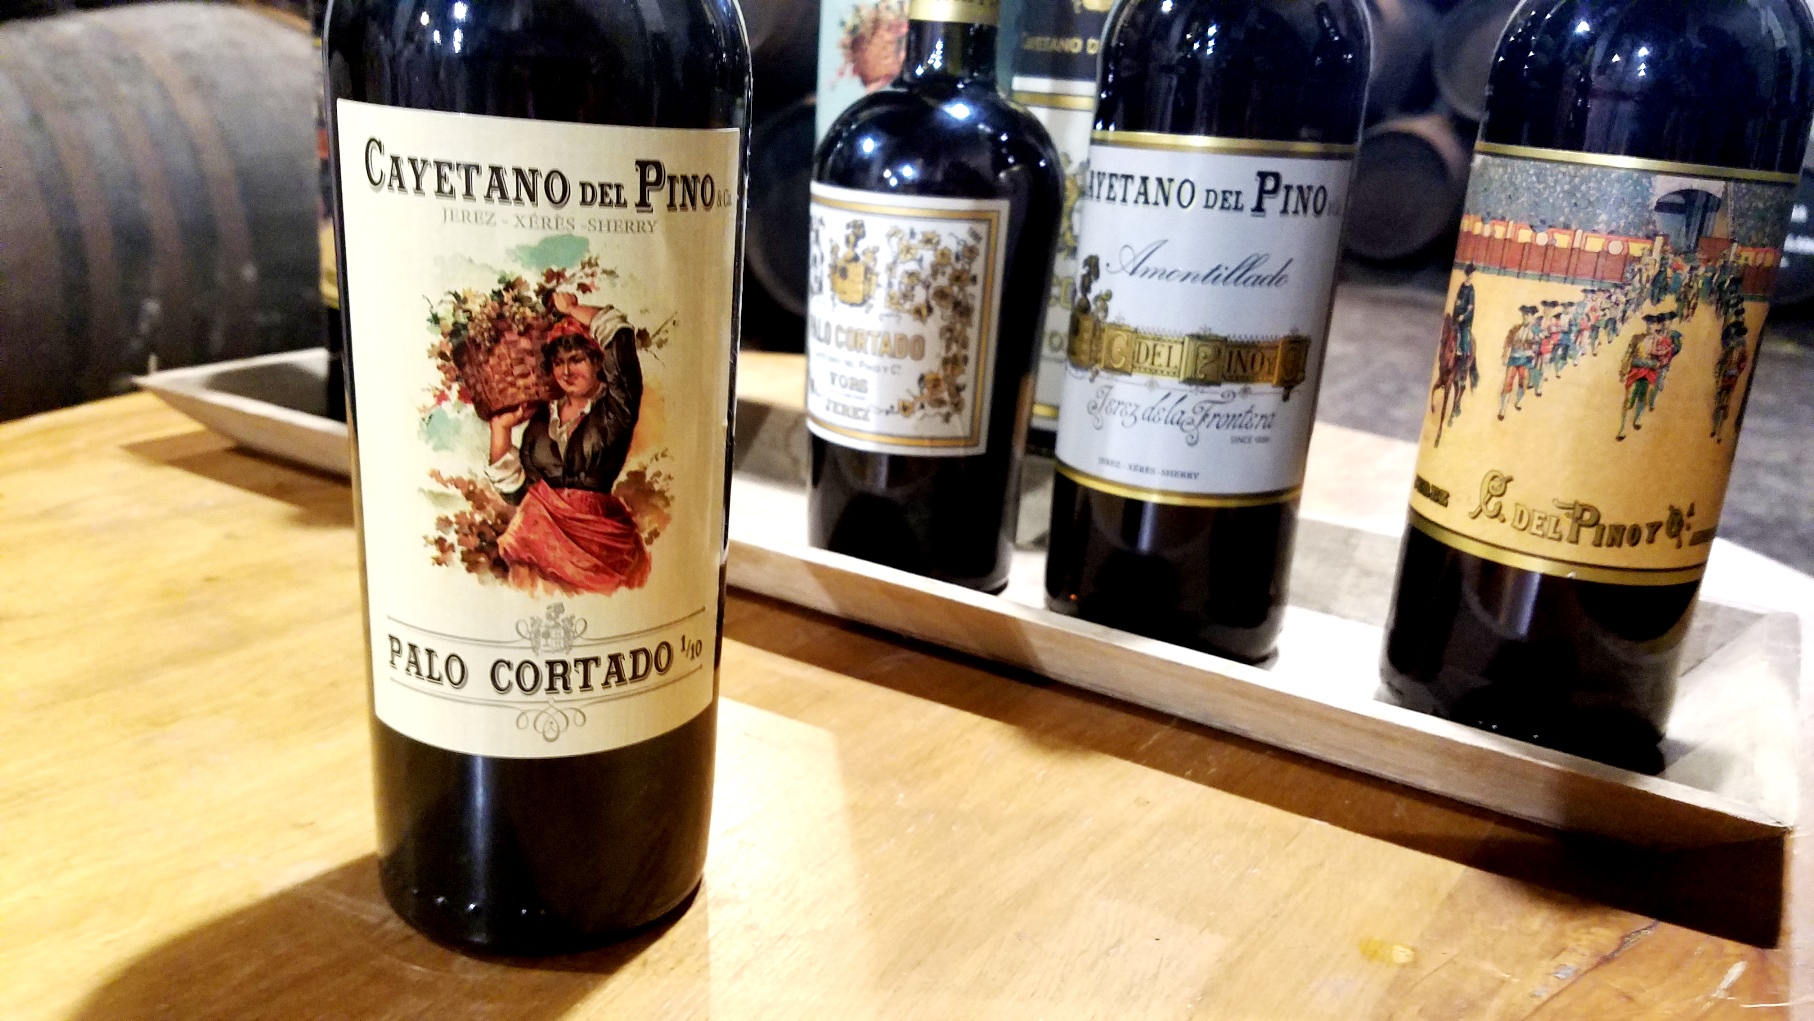 Cayetano Del Pino, Palo Cortado Sherry 1/10 VOS, Andalucía, Spain, Wine Casual